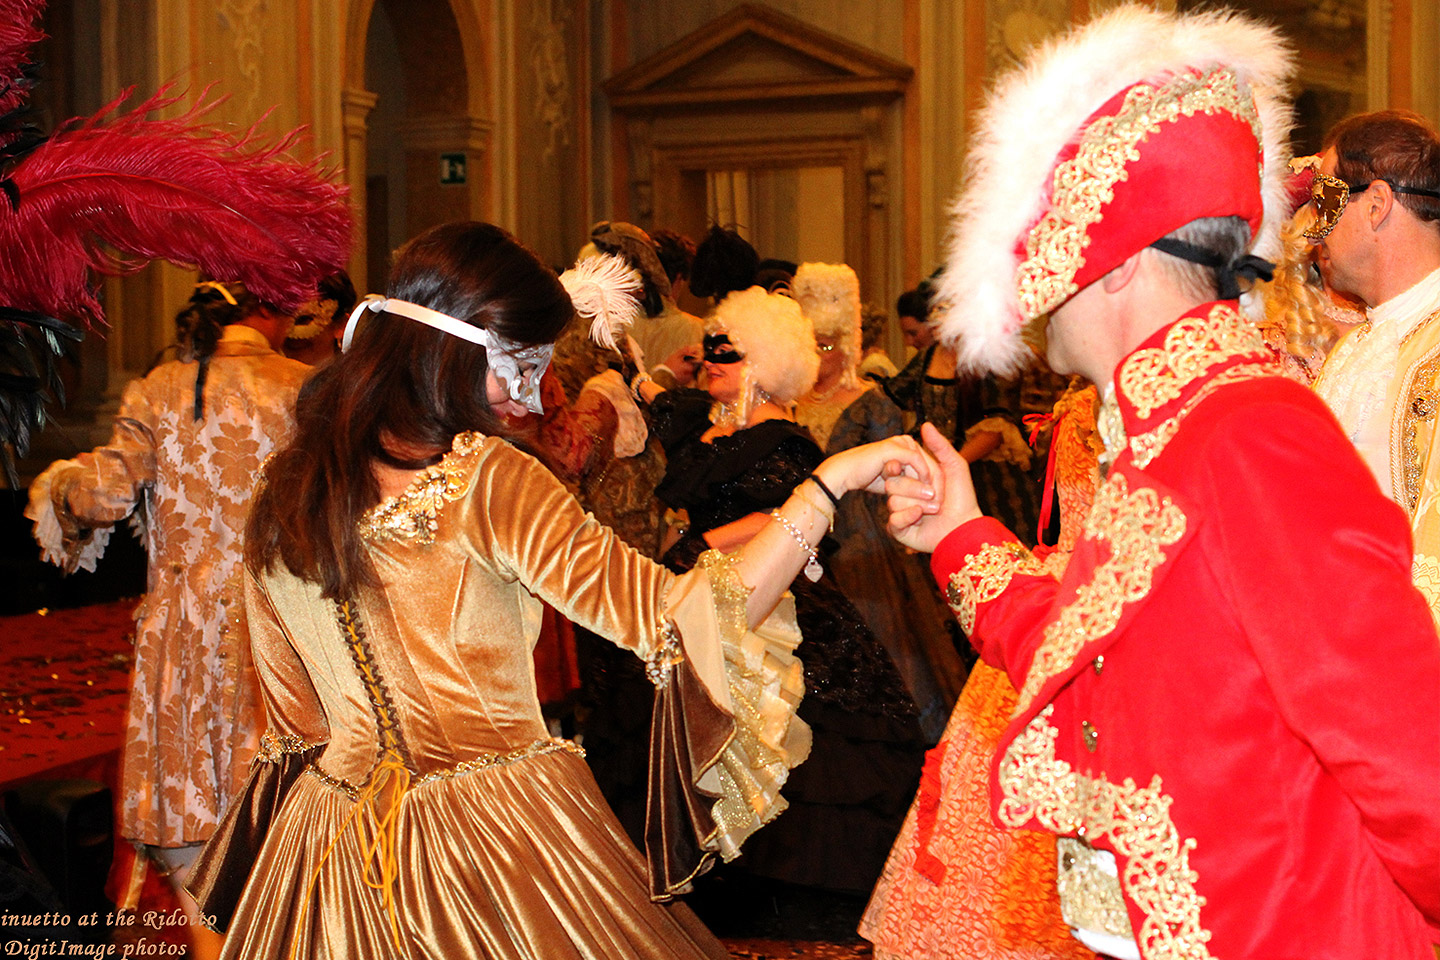 Carnaval de Venise : location de costumes d'époque vénitiens